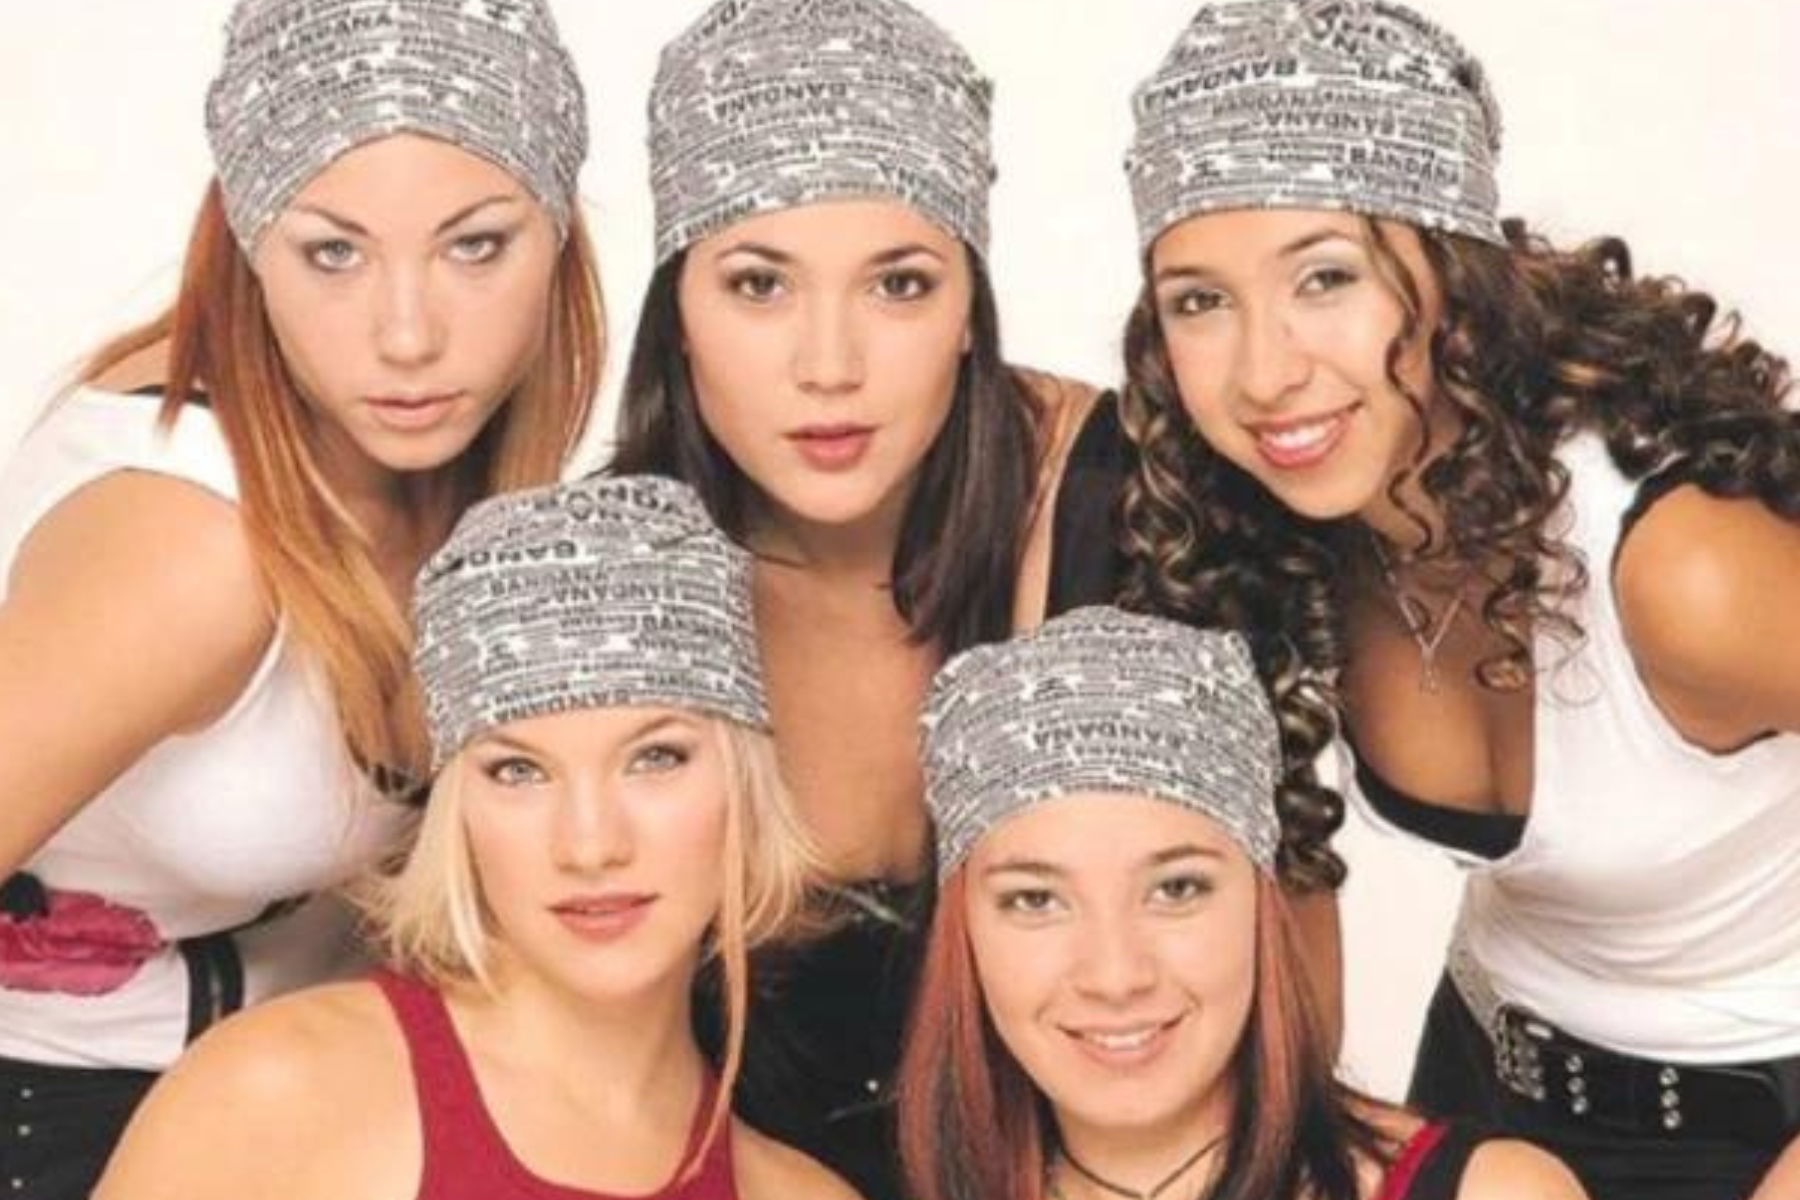 El grupo integrado por Valeria, Lisa, Lourdes, Ivonne y Virginia soprendió a los fans separandose en 2004. Ahora, Lowrdes reveló los motivos detrás de la decisión. 